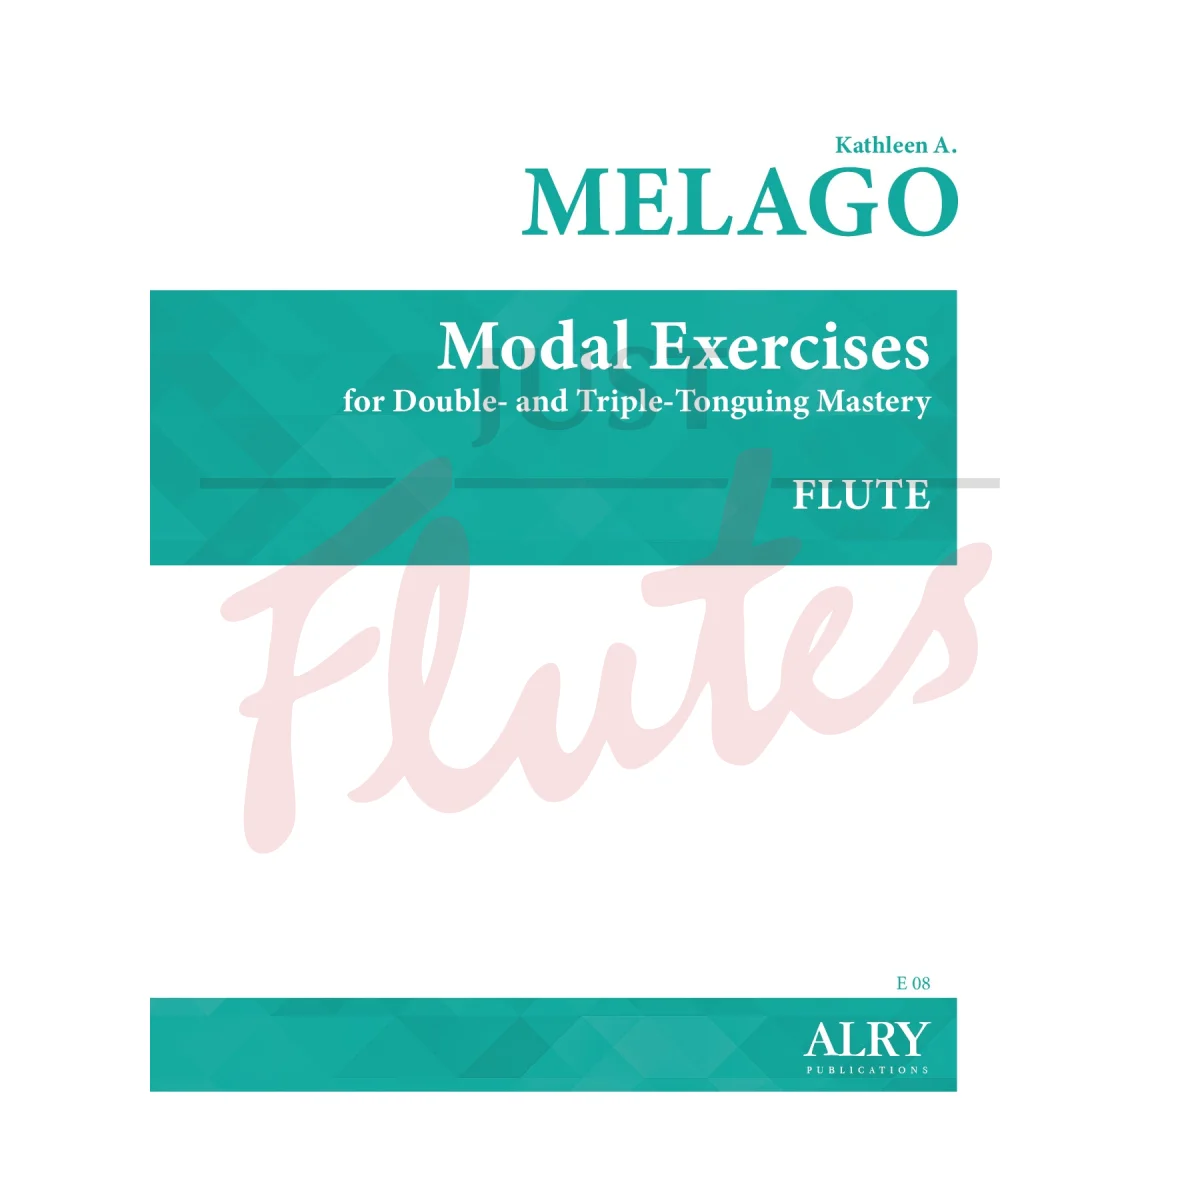 Modal Exercises for Flute